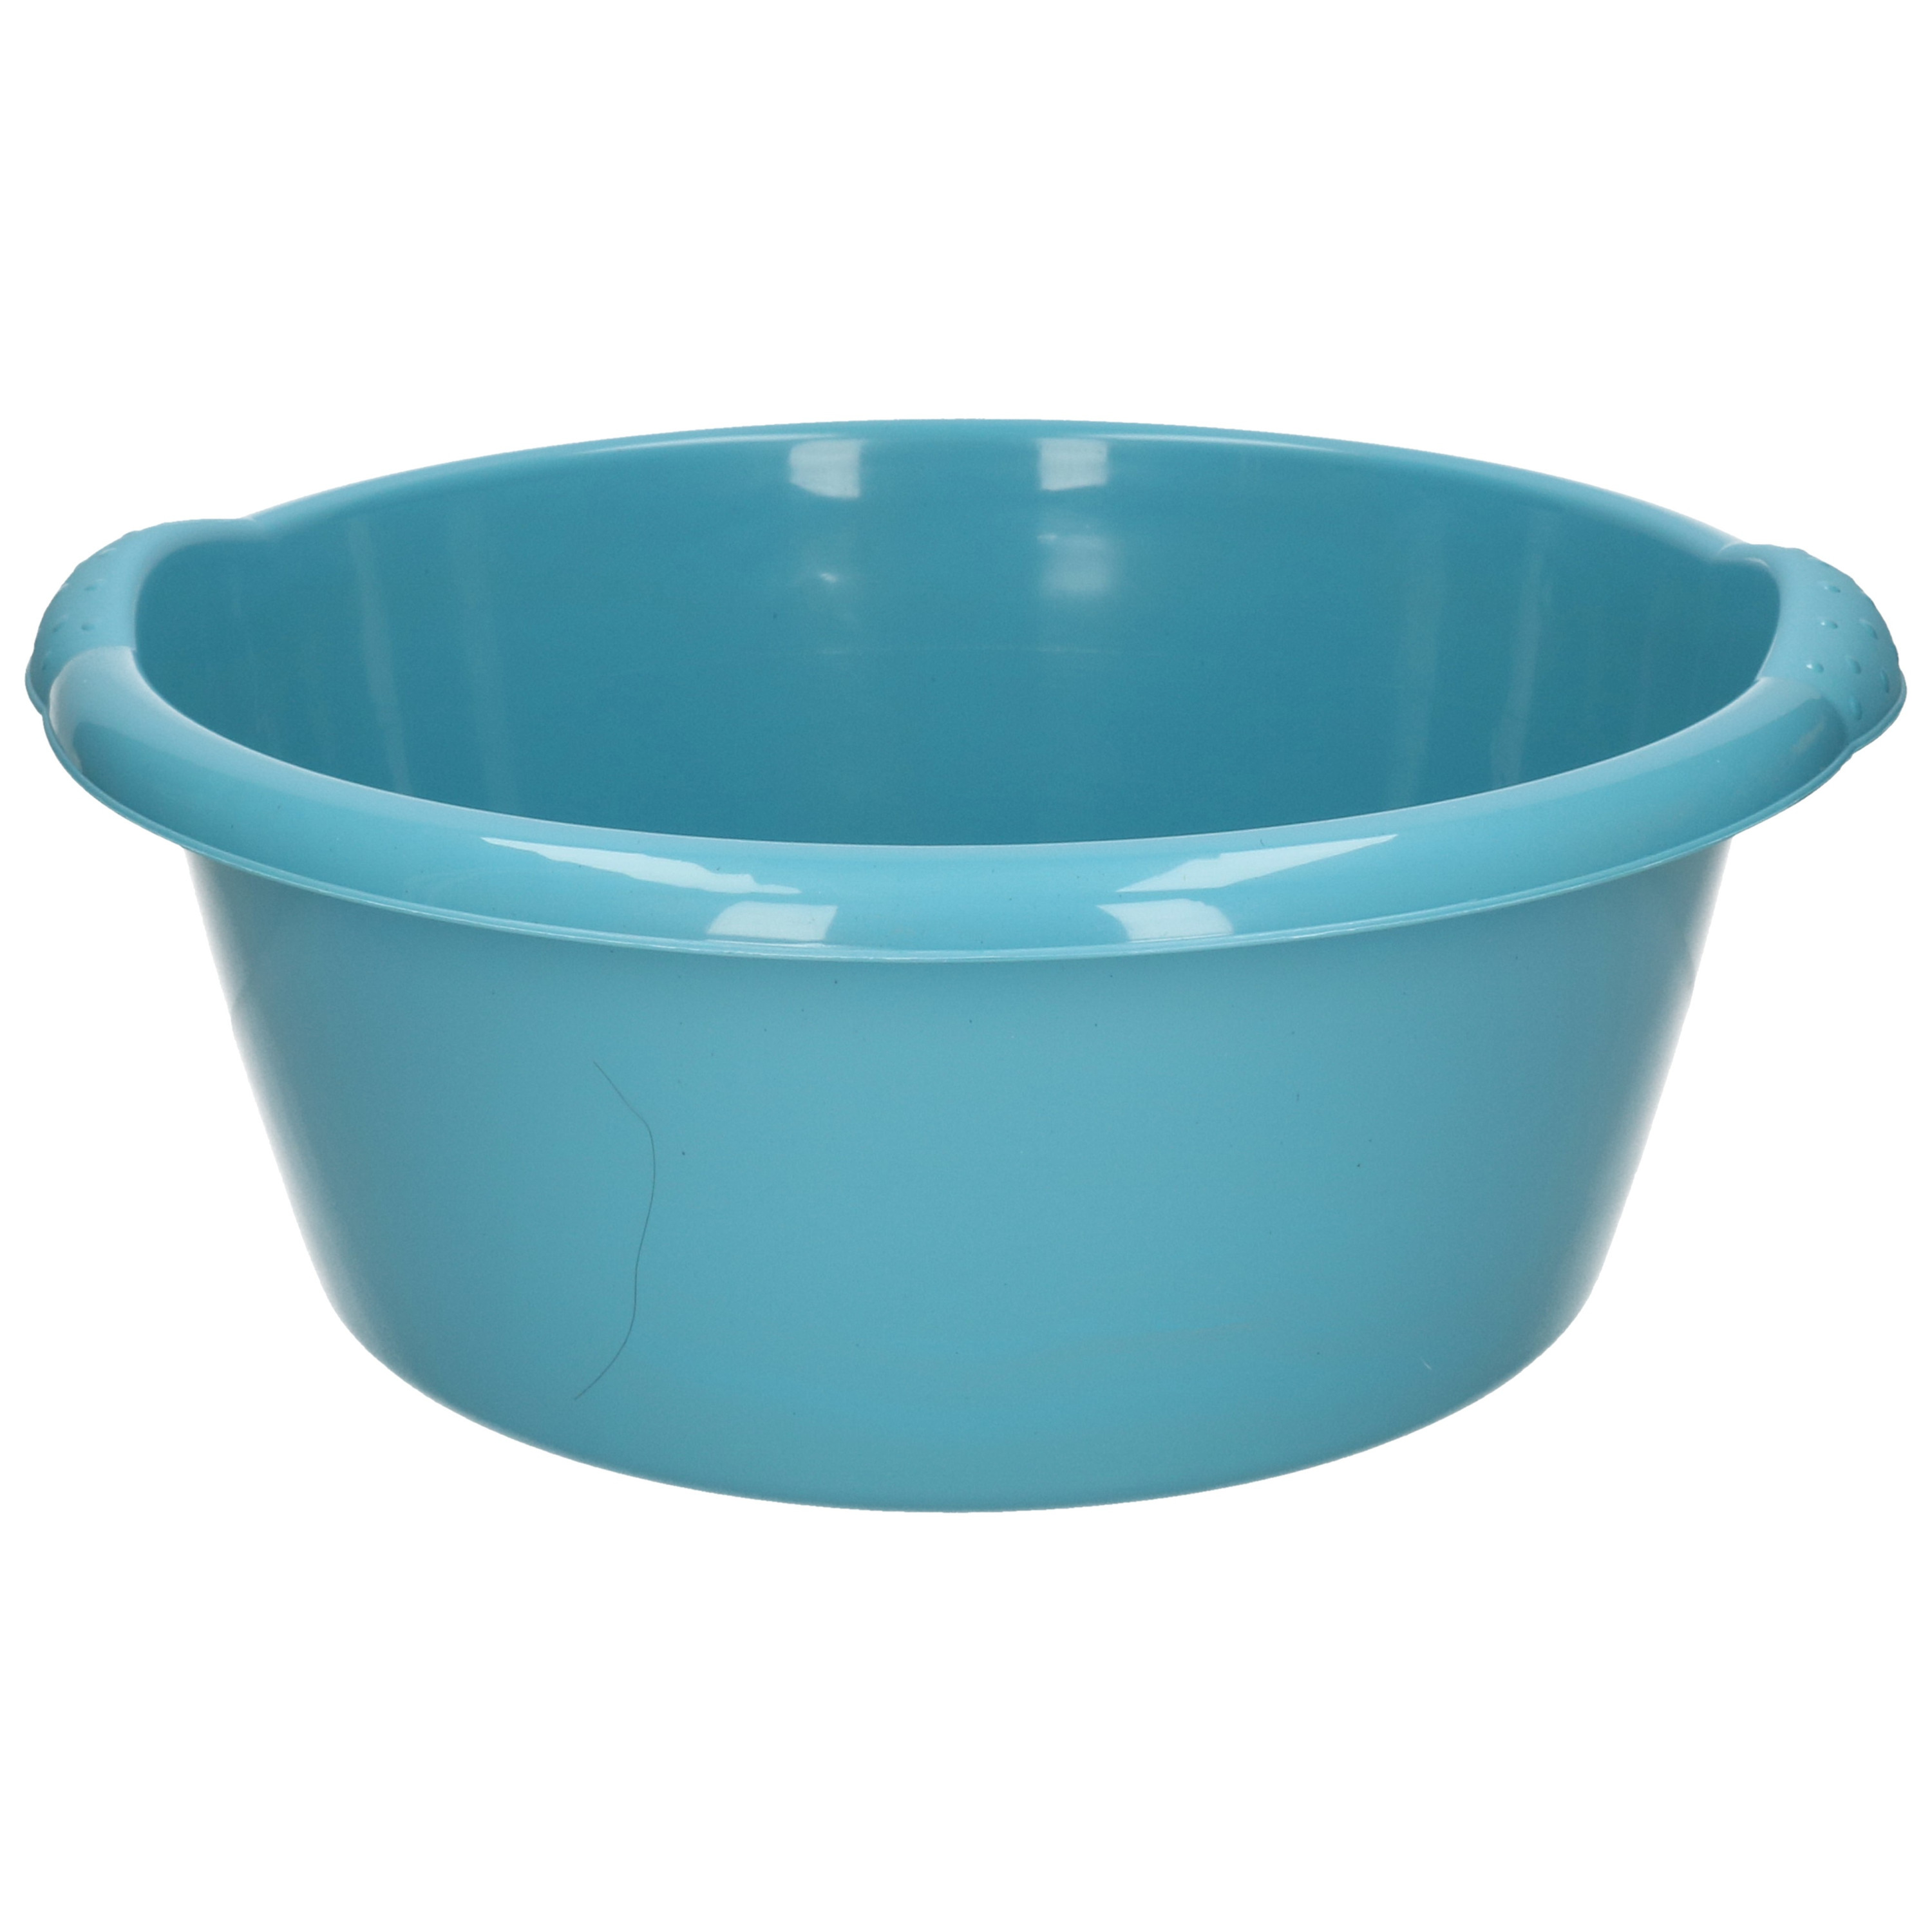 Turquoise blauwe afwasbak-afwasteil rond 10 liter 38 cm